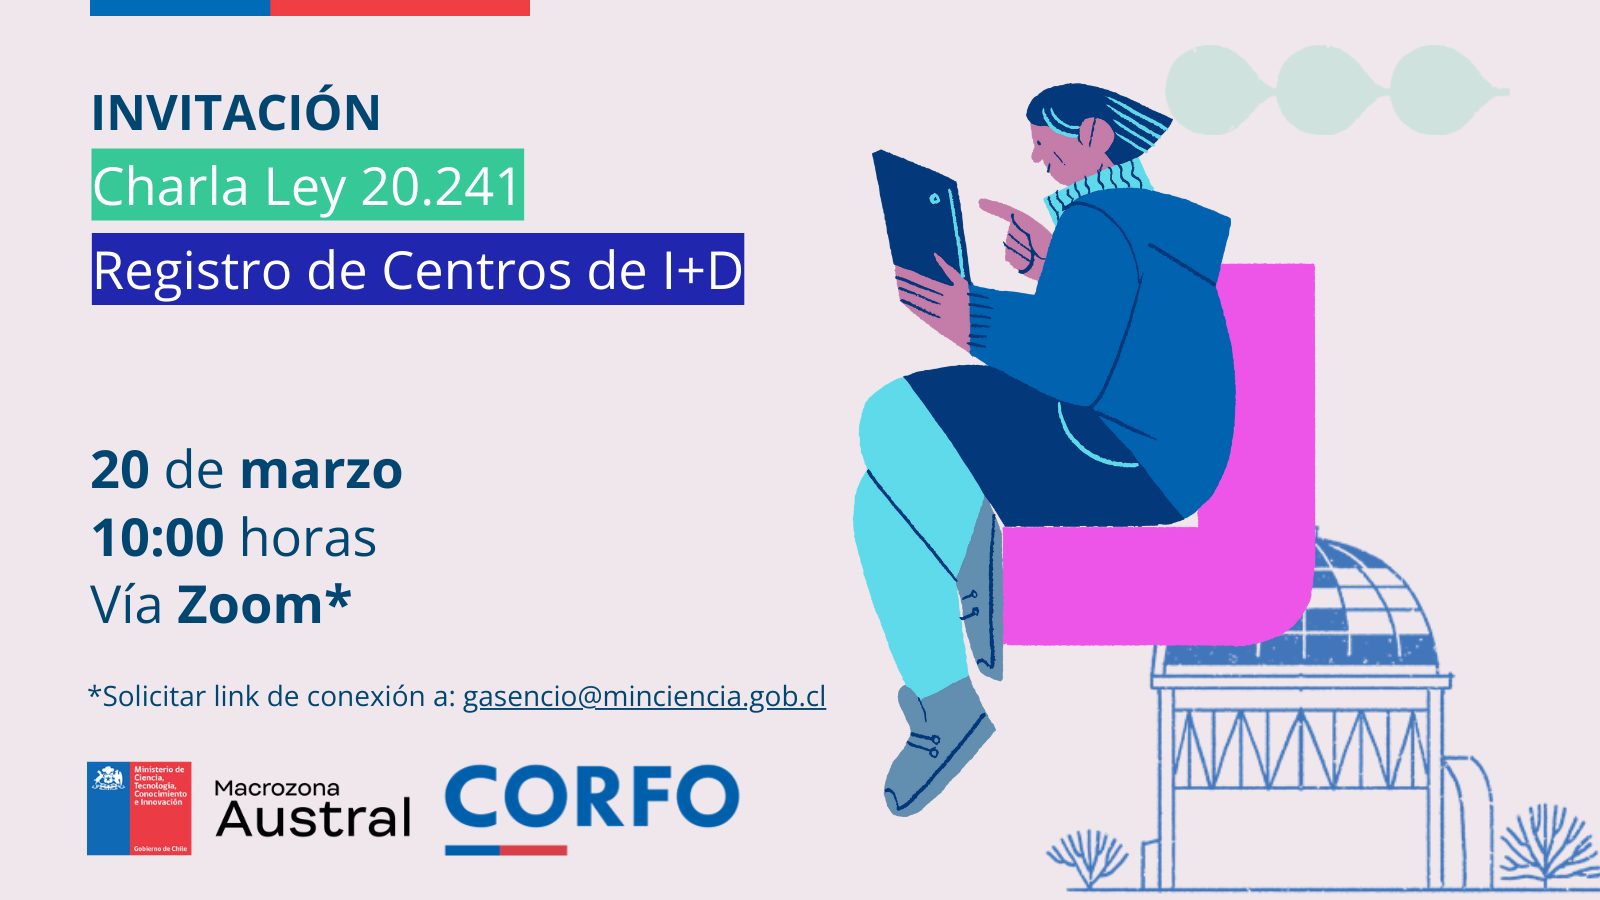 Seremi de Ciencia, Verónica Vallejos, invita a participar de charla sobre Registro de Centros de I+D